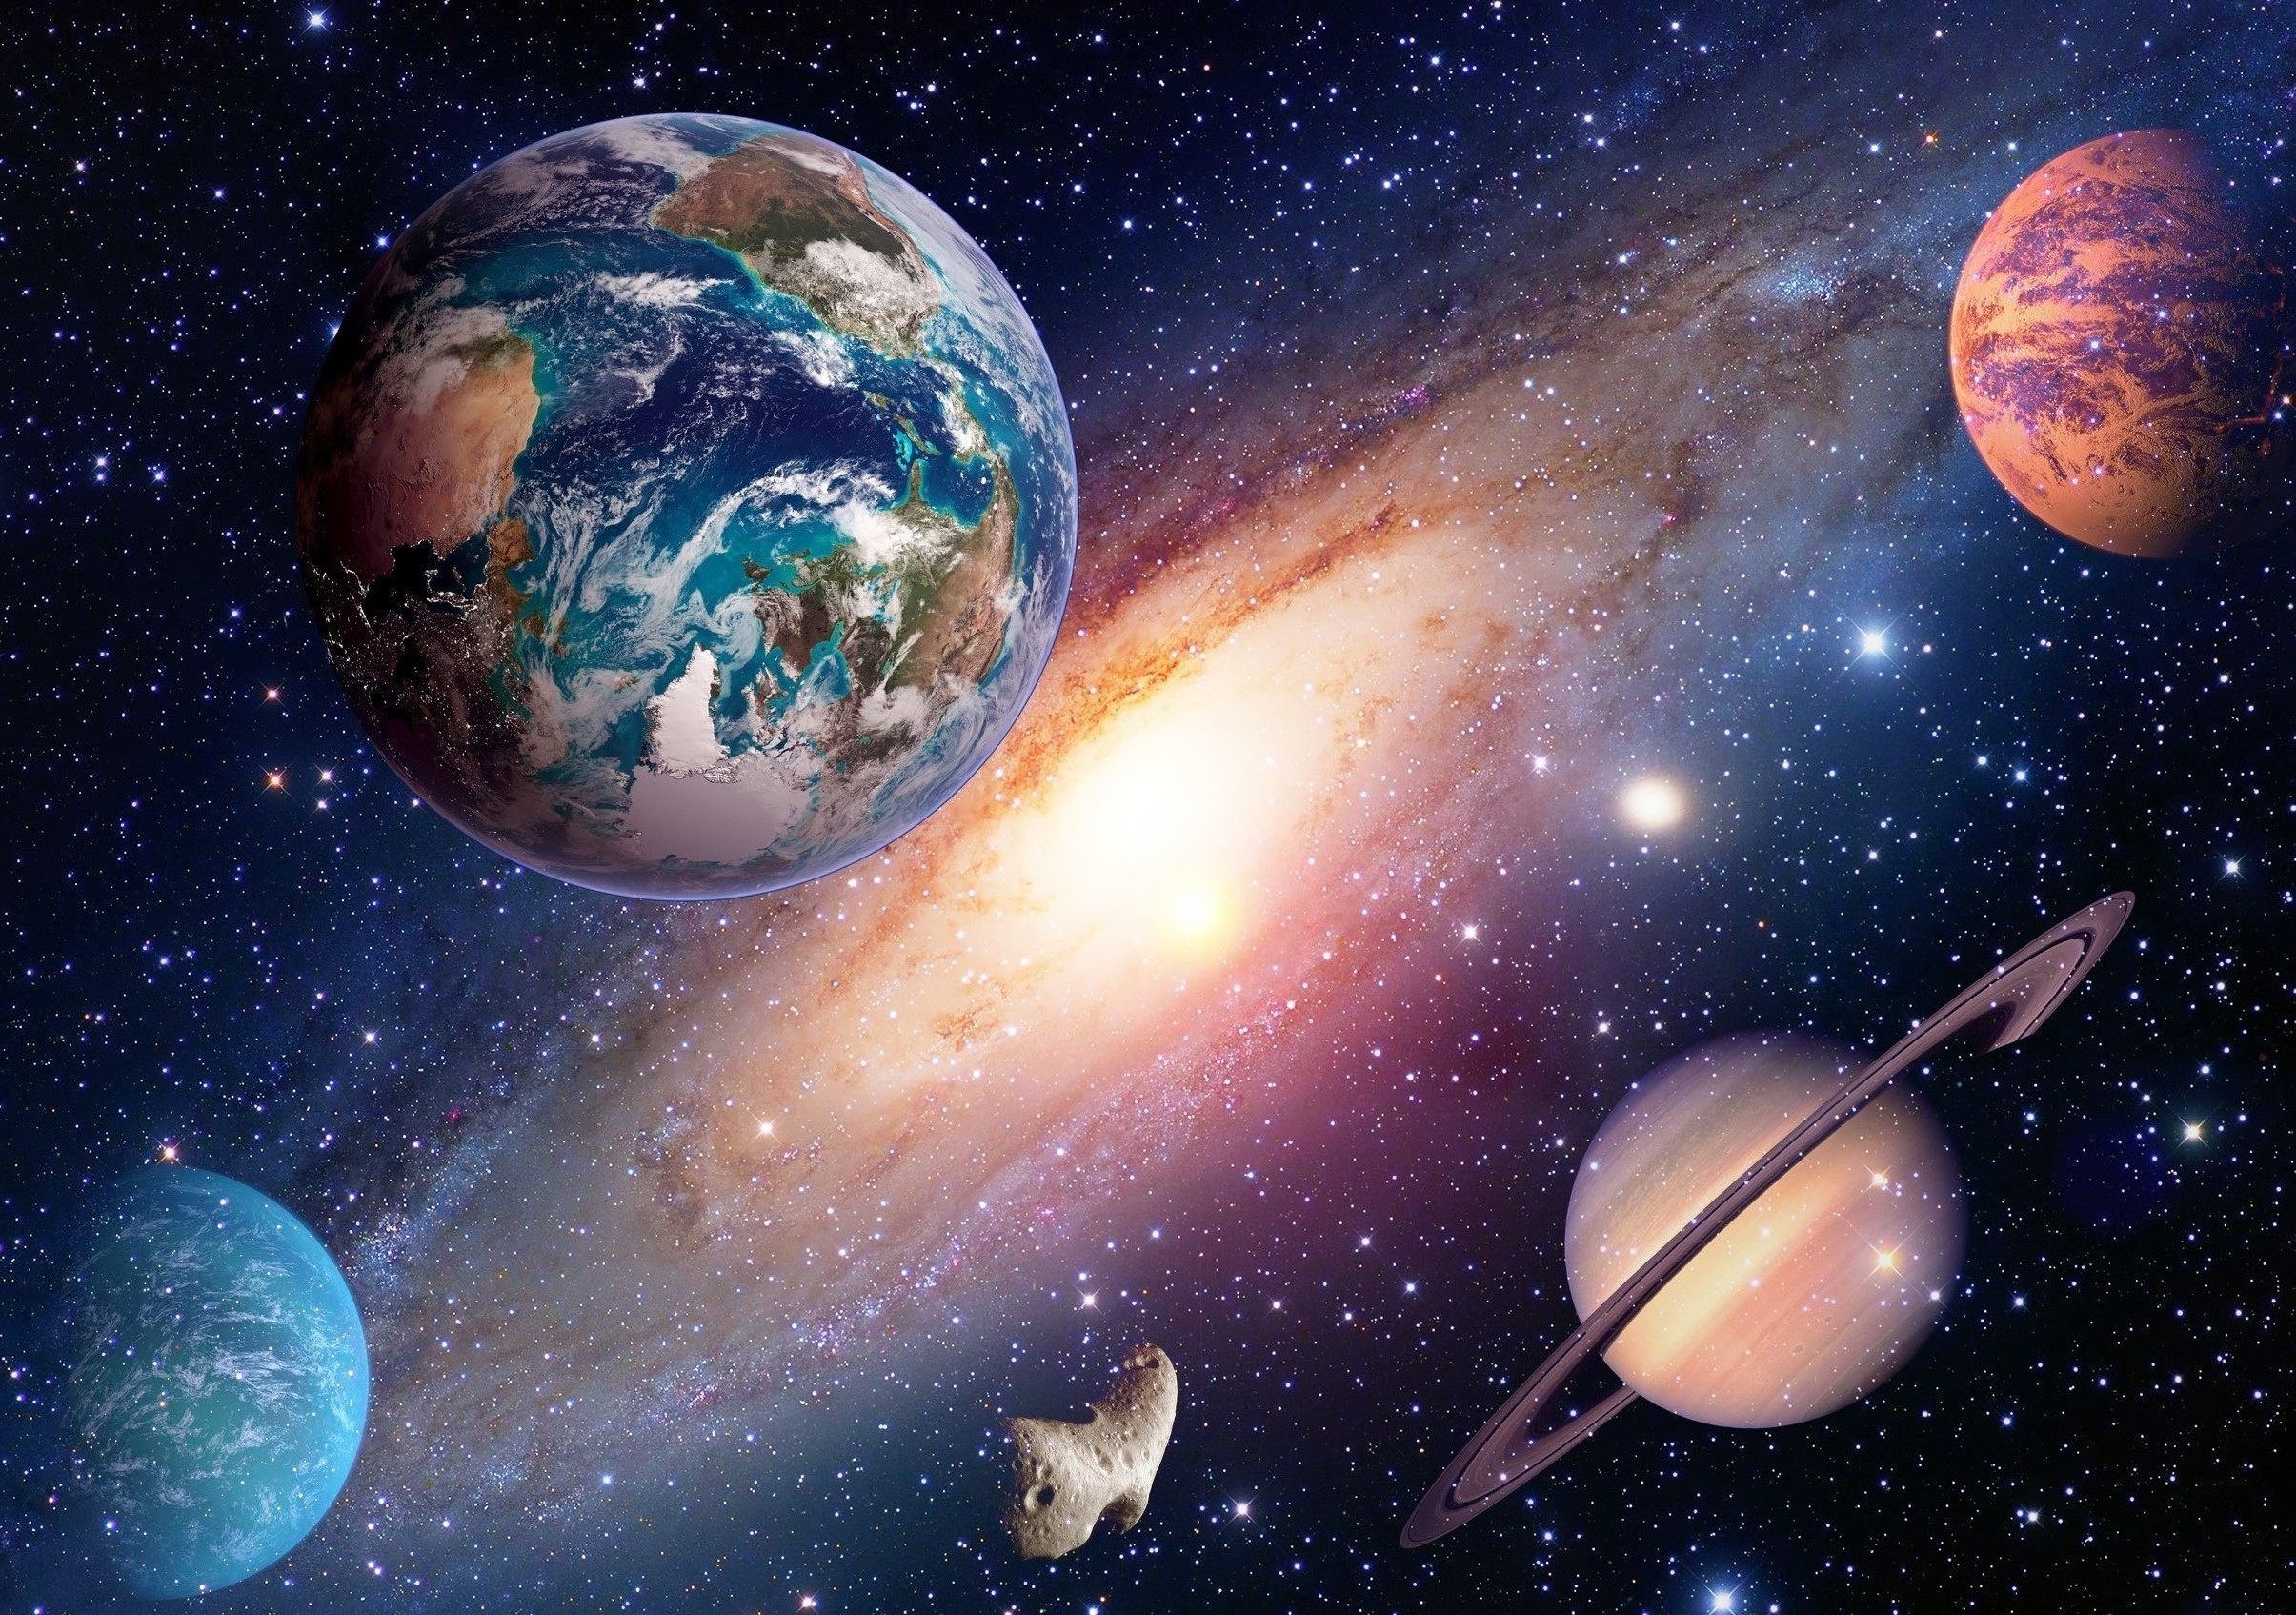 行星的宇宙-神奇的太空摄影壁纸-1920x1200下载 | 10wallpaper.com